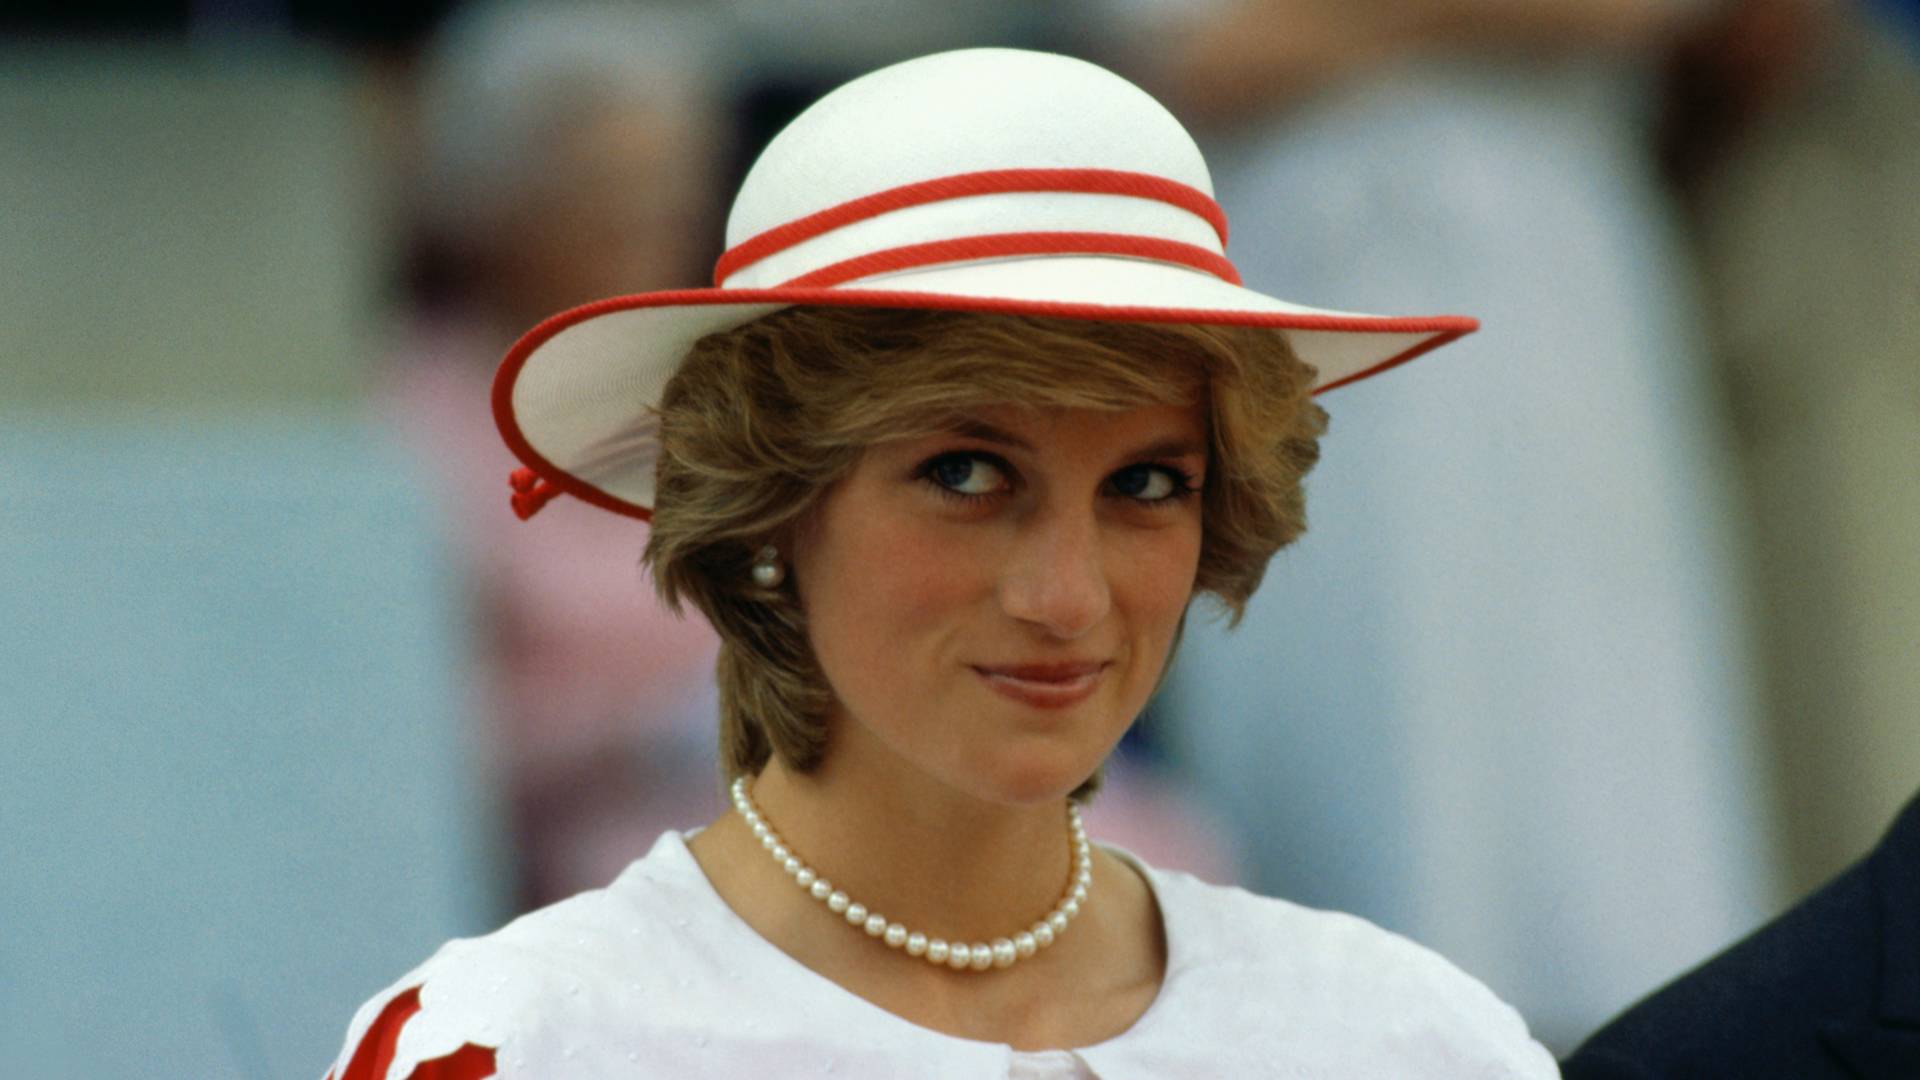 Księżna Diana była chora psychicznie? Wyznanie terapeuty wstrząsnęło mediami